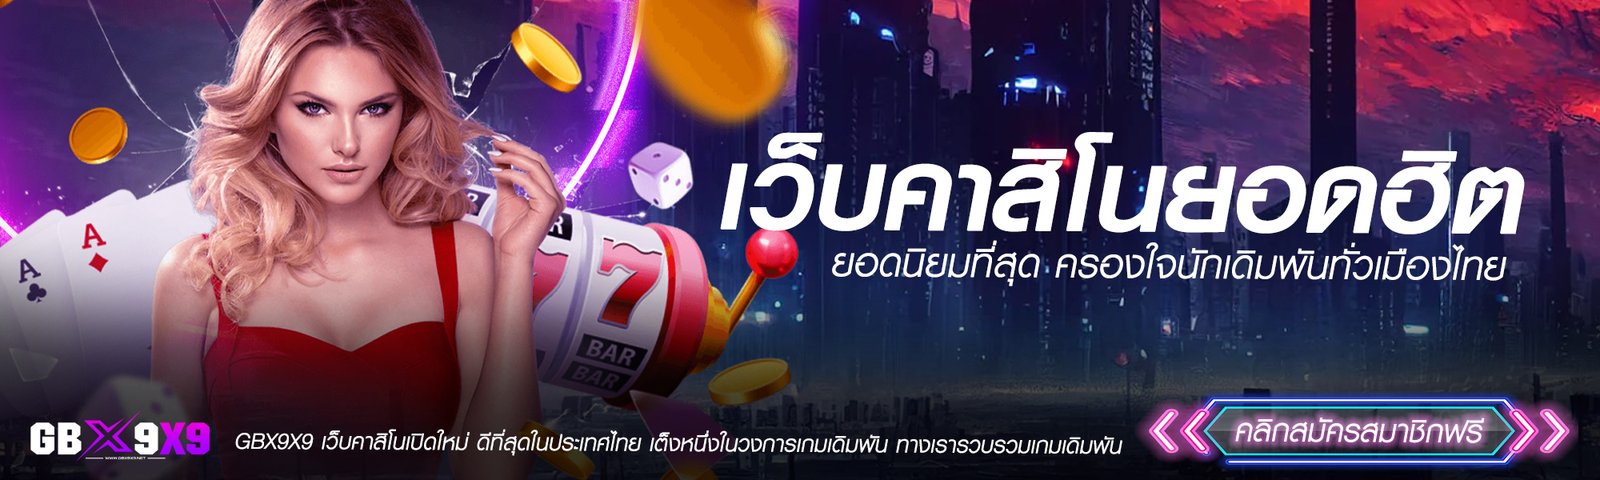 เว็บคาสิโนยอดฮิต GBX9X9 ยอดนิยมที่สุด ครองใจนักเดิมพันทั่วเมืองไทย